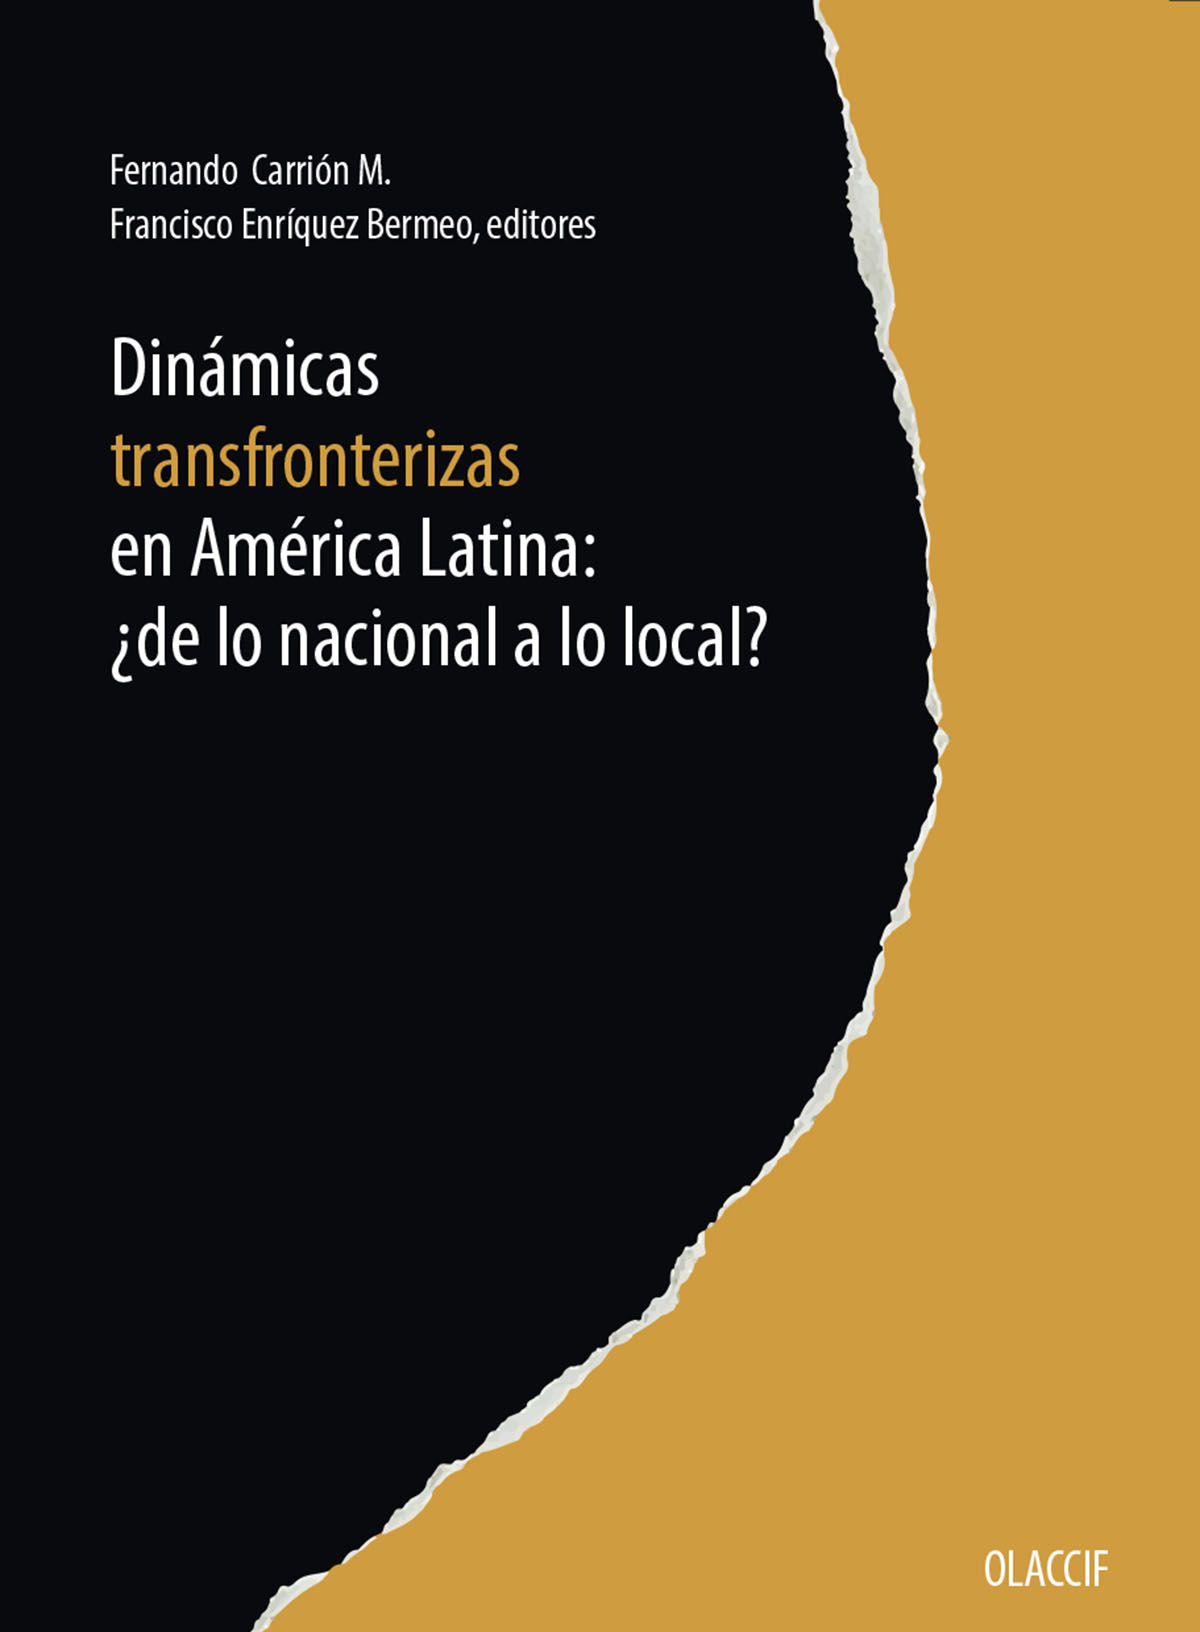 Dinámicas transfronterizas en América Latina: ¿de lo nacional a lo local?